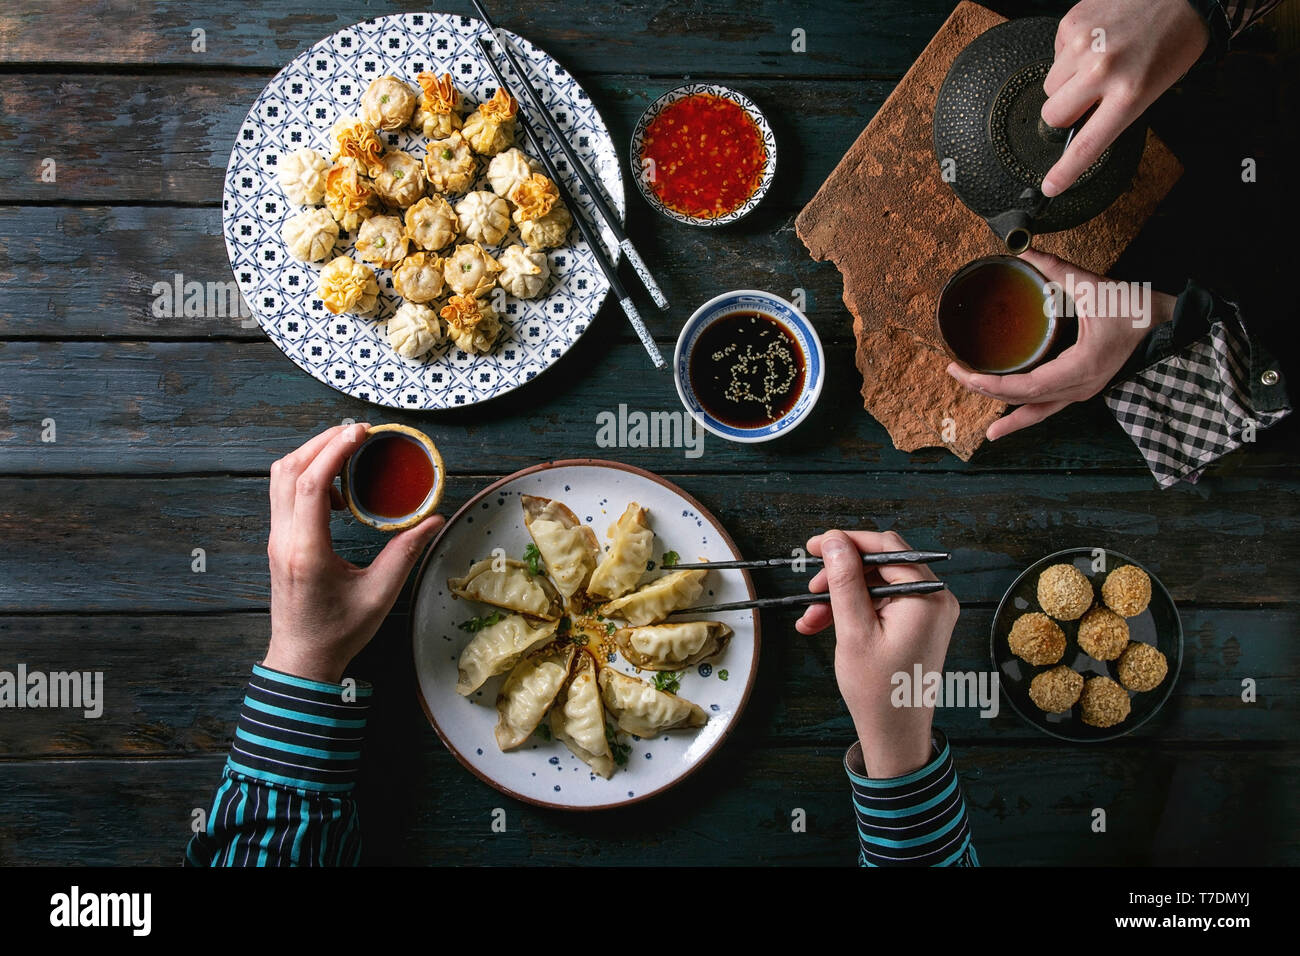 Familie oder Freunden Abendessen mit Dim Sum Gyozas asiatische gebratene Knödel, verschiedenen Saucen in keramischen Platten mit Stäbchen, Kaffee Tassen und teapo serviert. Stockfoto